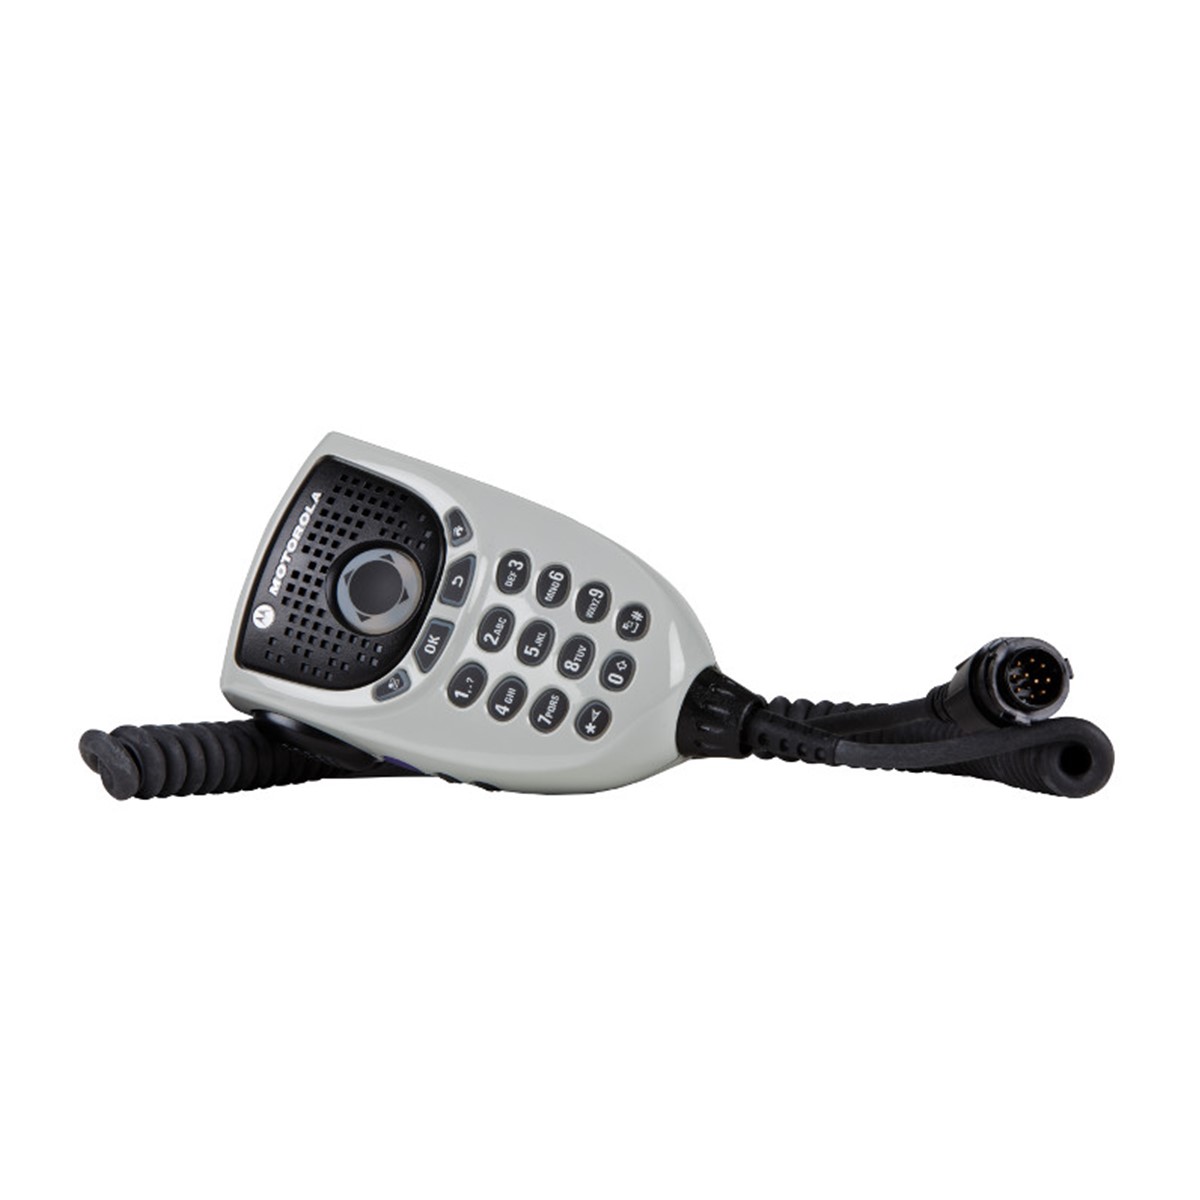 Micrófono Motorola RMN5127 para Radio Móvil